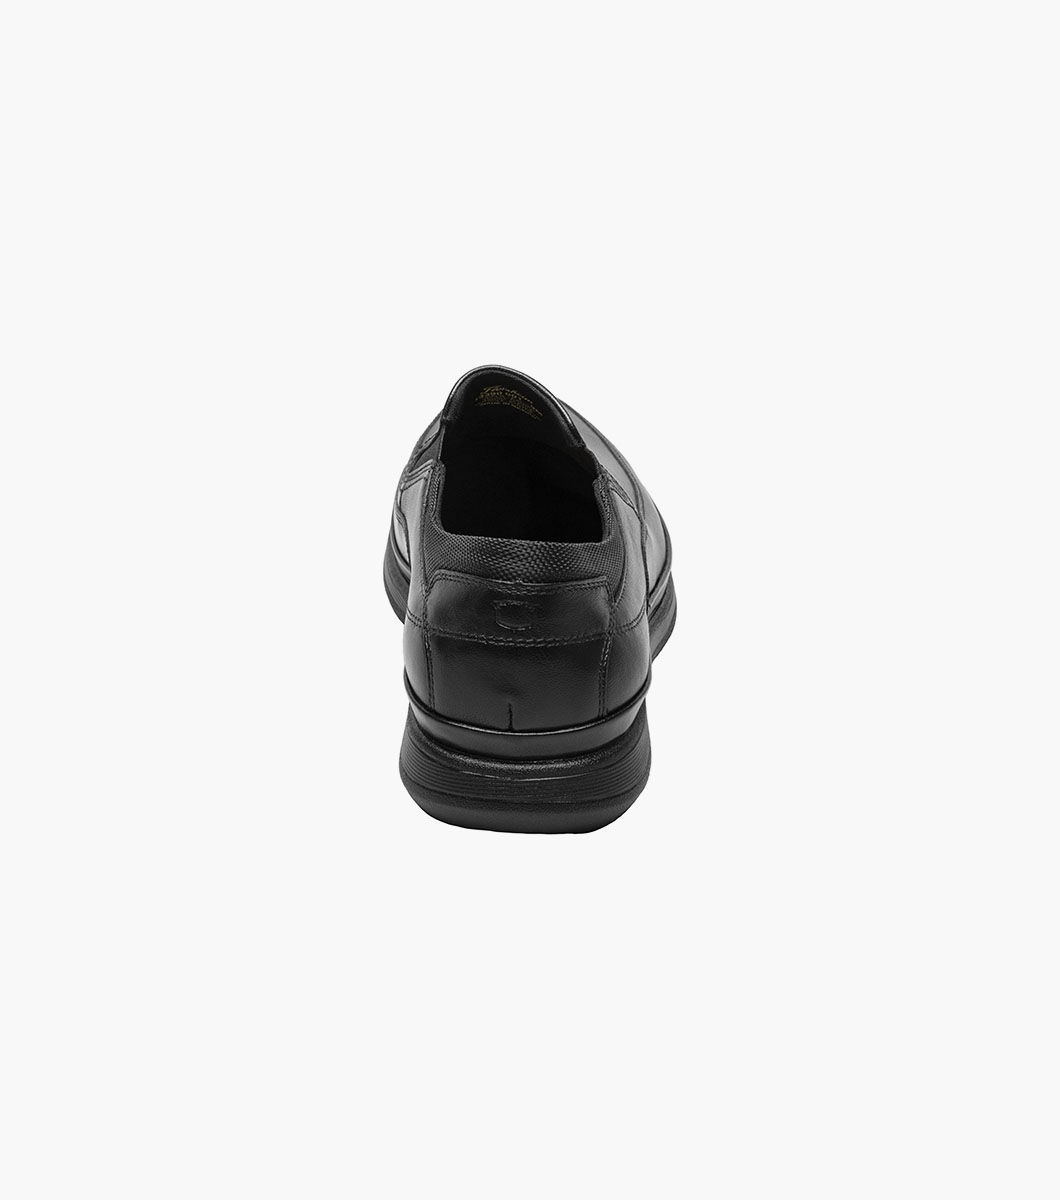 Motion Moc Toe Slip On Men’s Casual Shoes | Florsheim.com